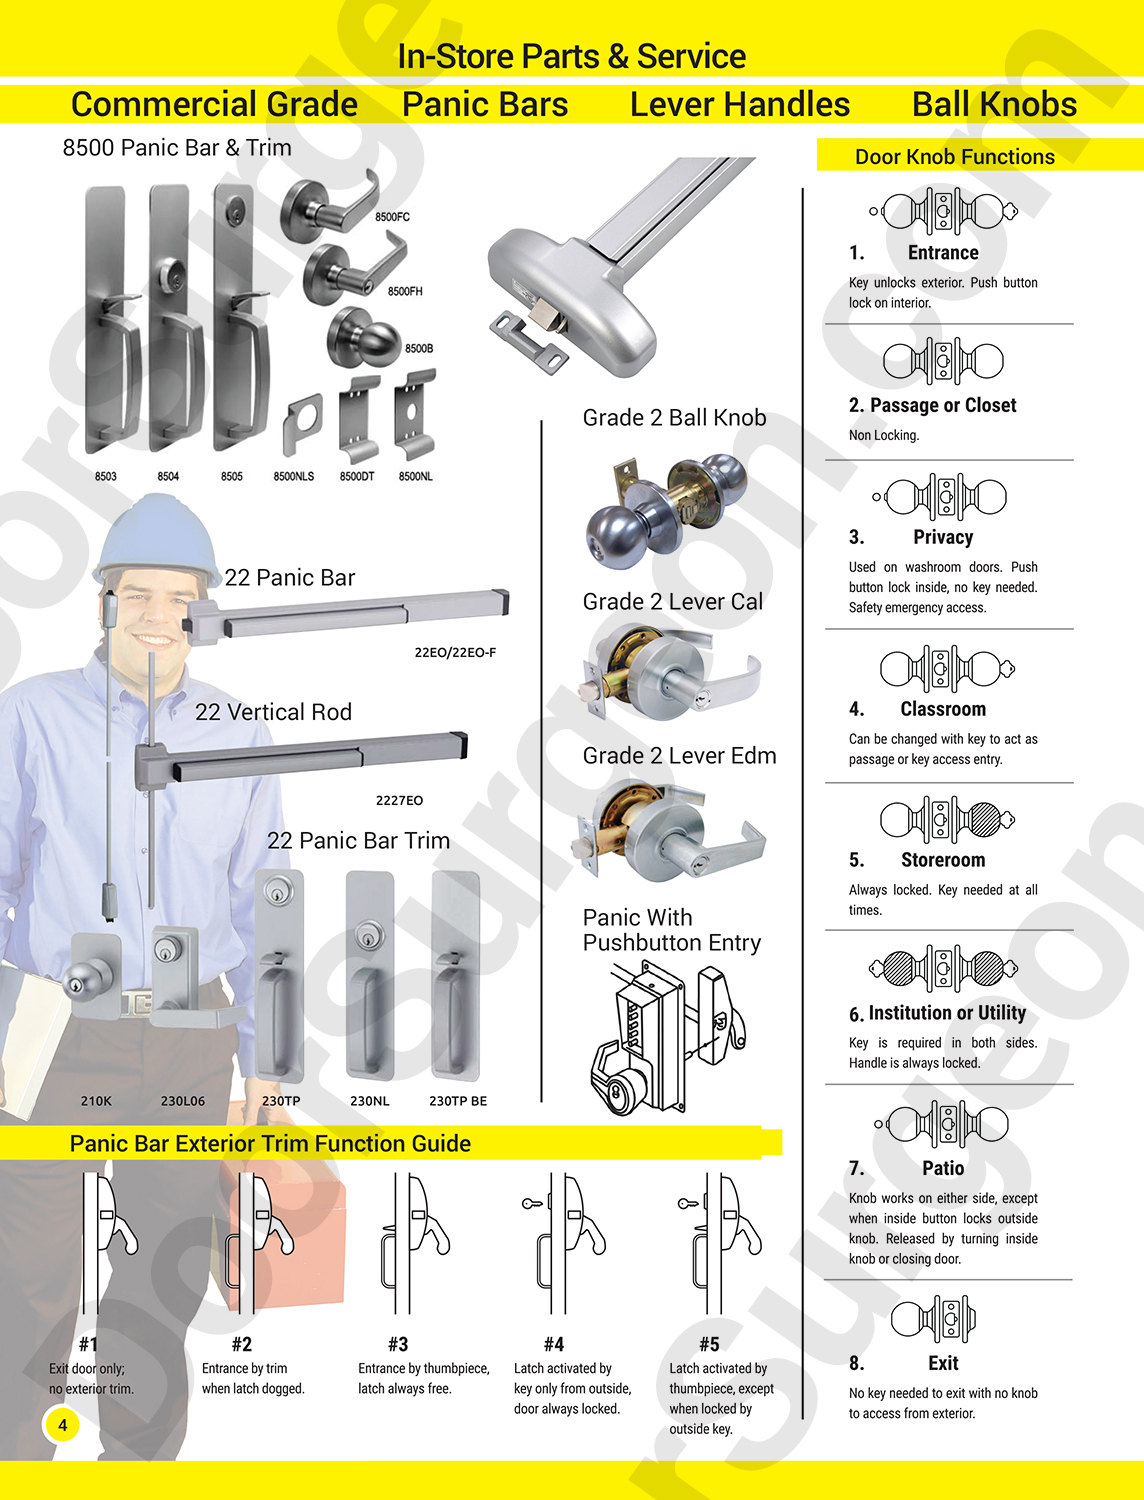 Door Surgeon in-store parts & service for commercial grade door panic bar lever handle & ball knob.